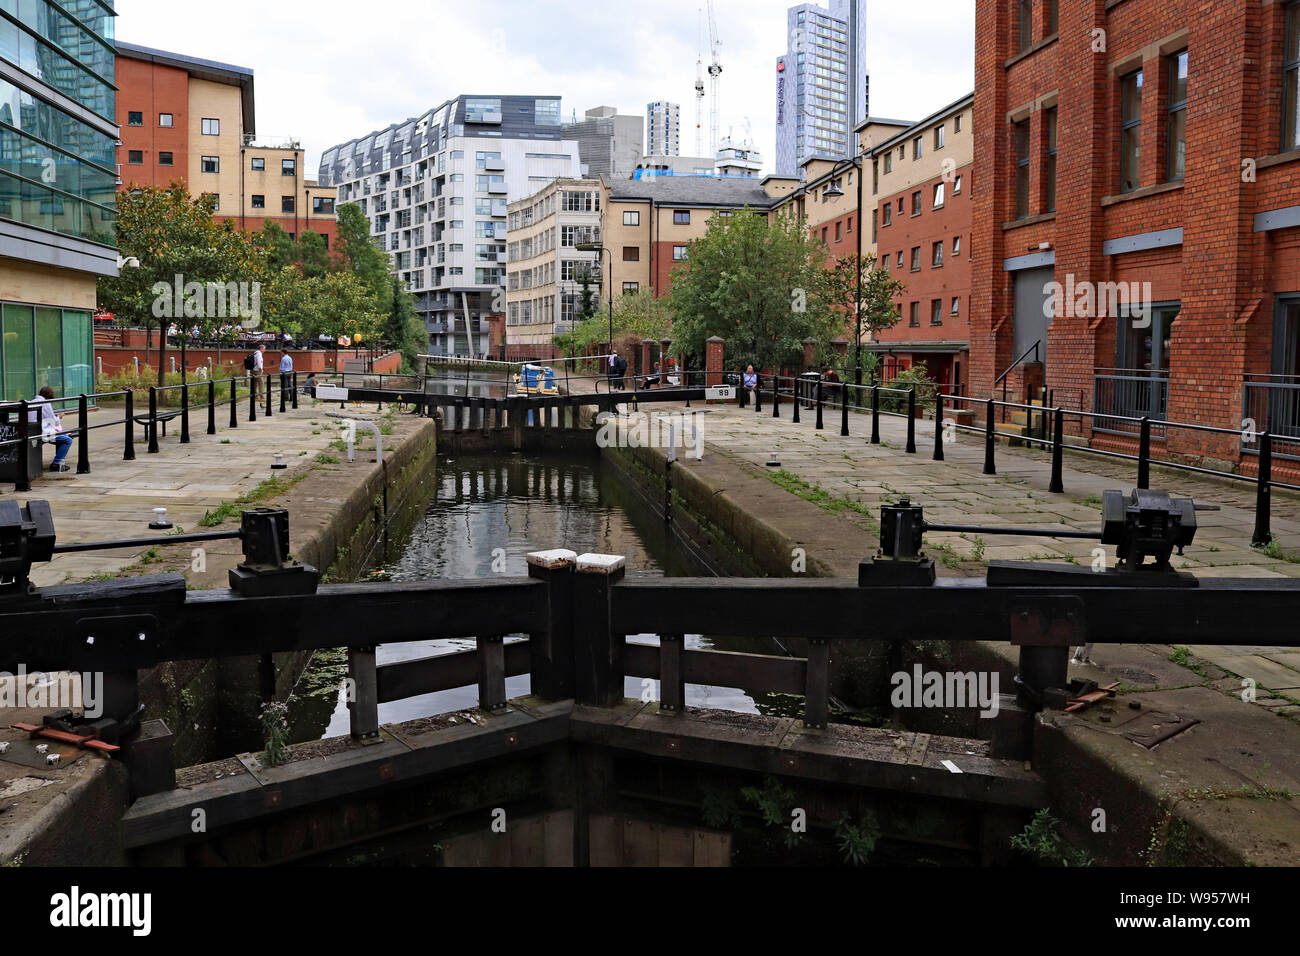 Clôtures de sécurité installé récemment autour de large Tib serrure sur le canal de Rochdale, dans le centre de Manchester. Cela faisait suite à un accident de noyade en mars 2018 Banque D'Images